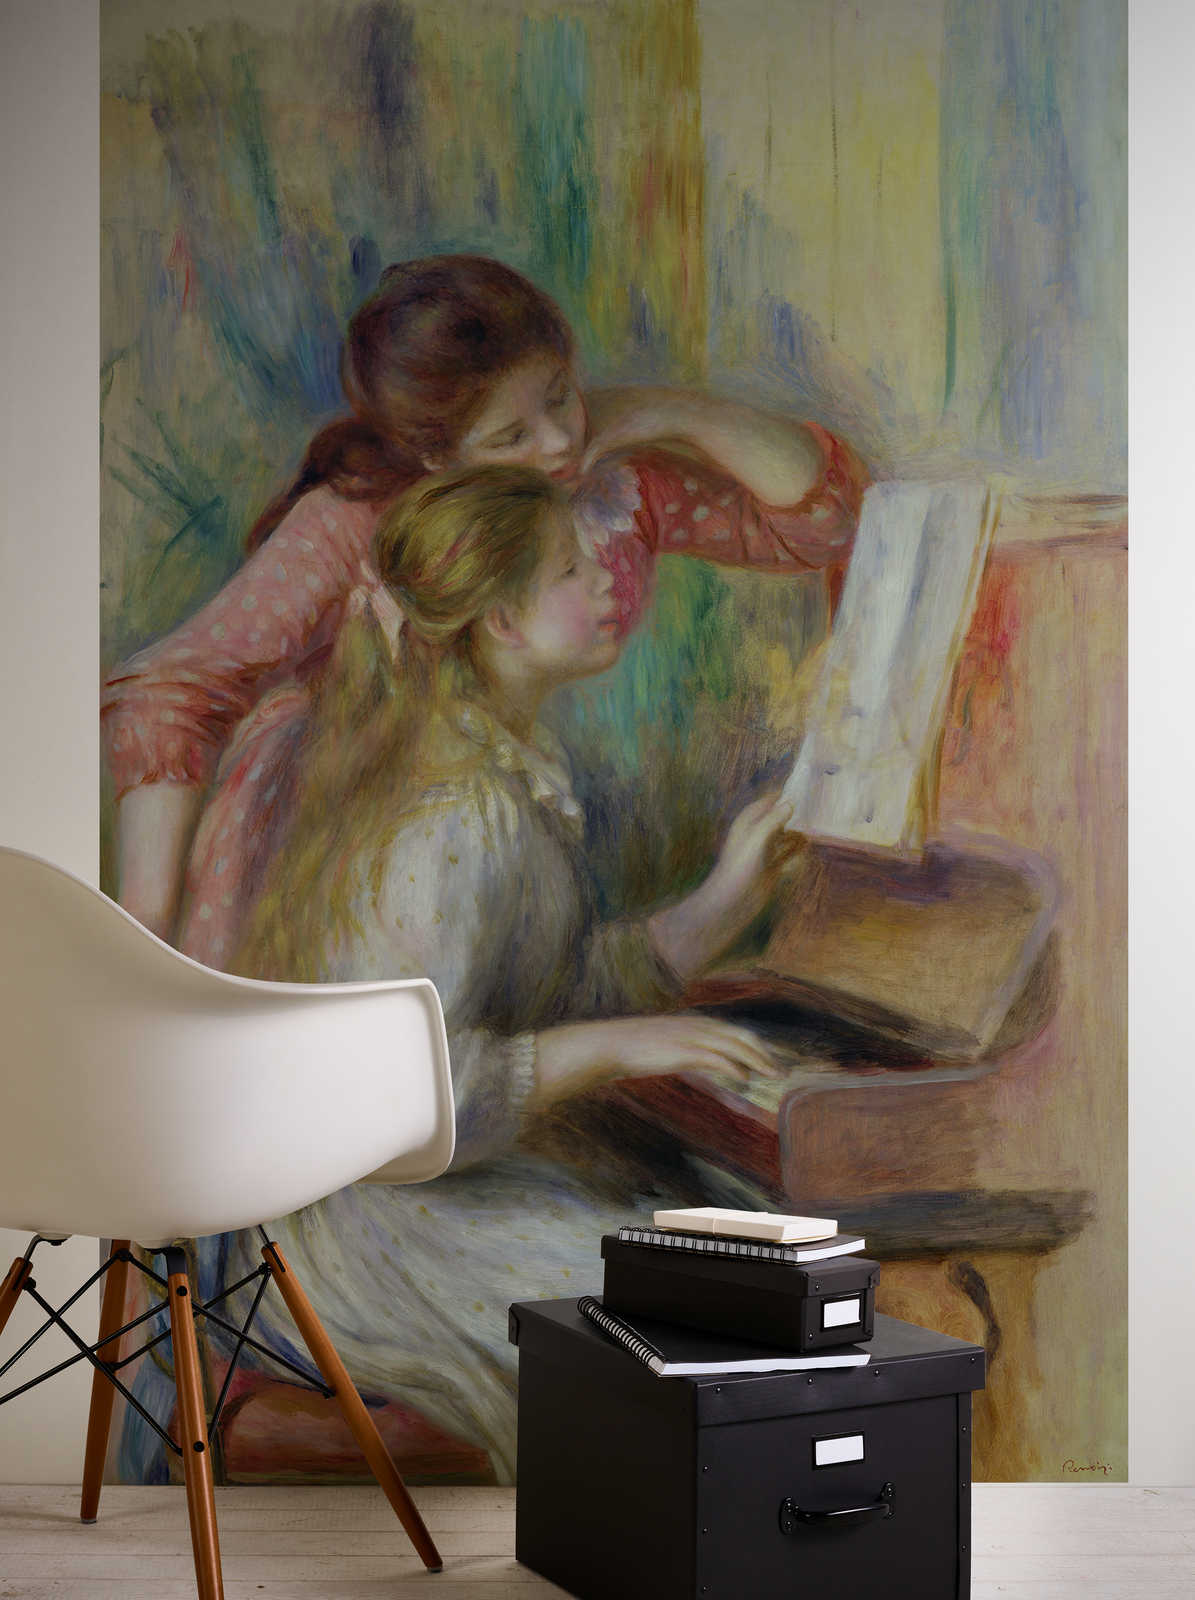             Jonge meisjes aan de piano" muurschildering van Pierre Auguste Renoir
        